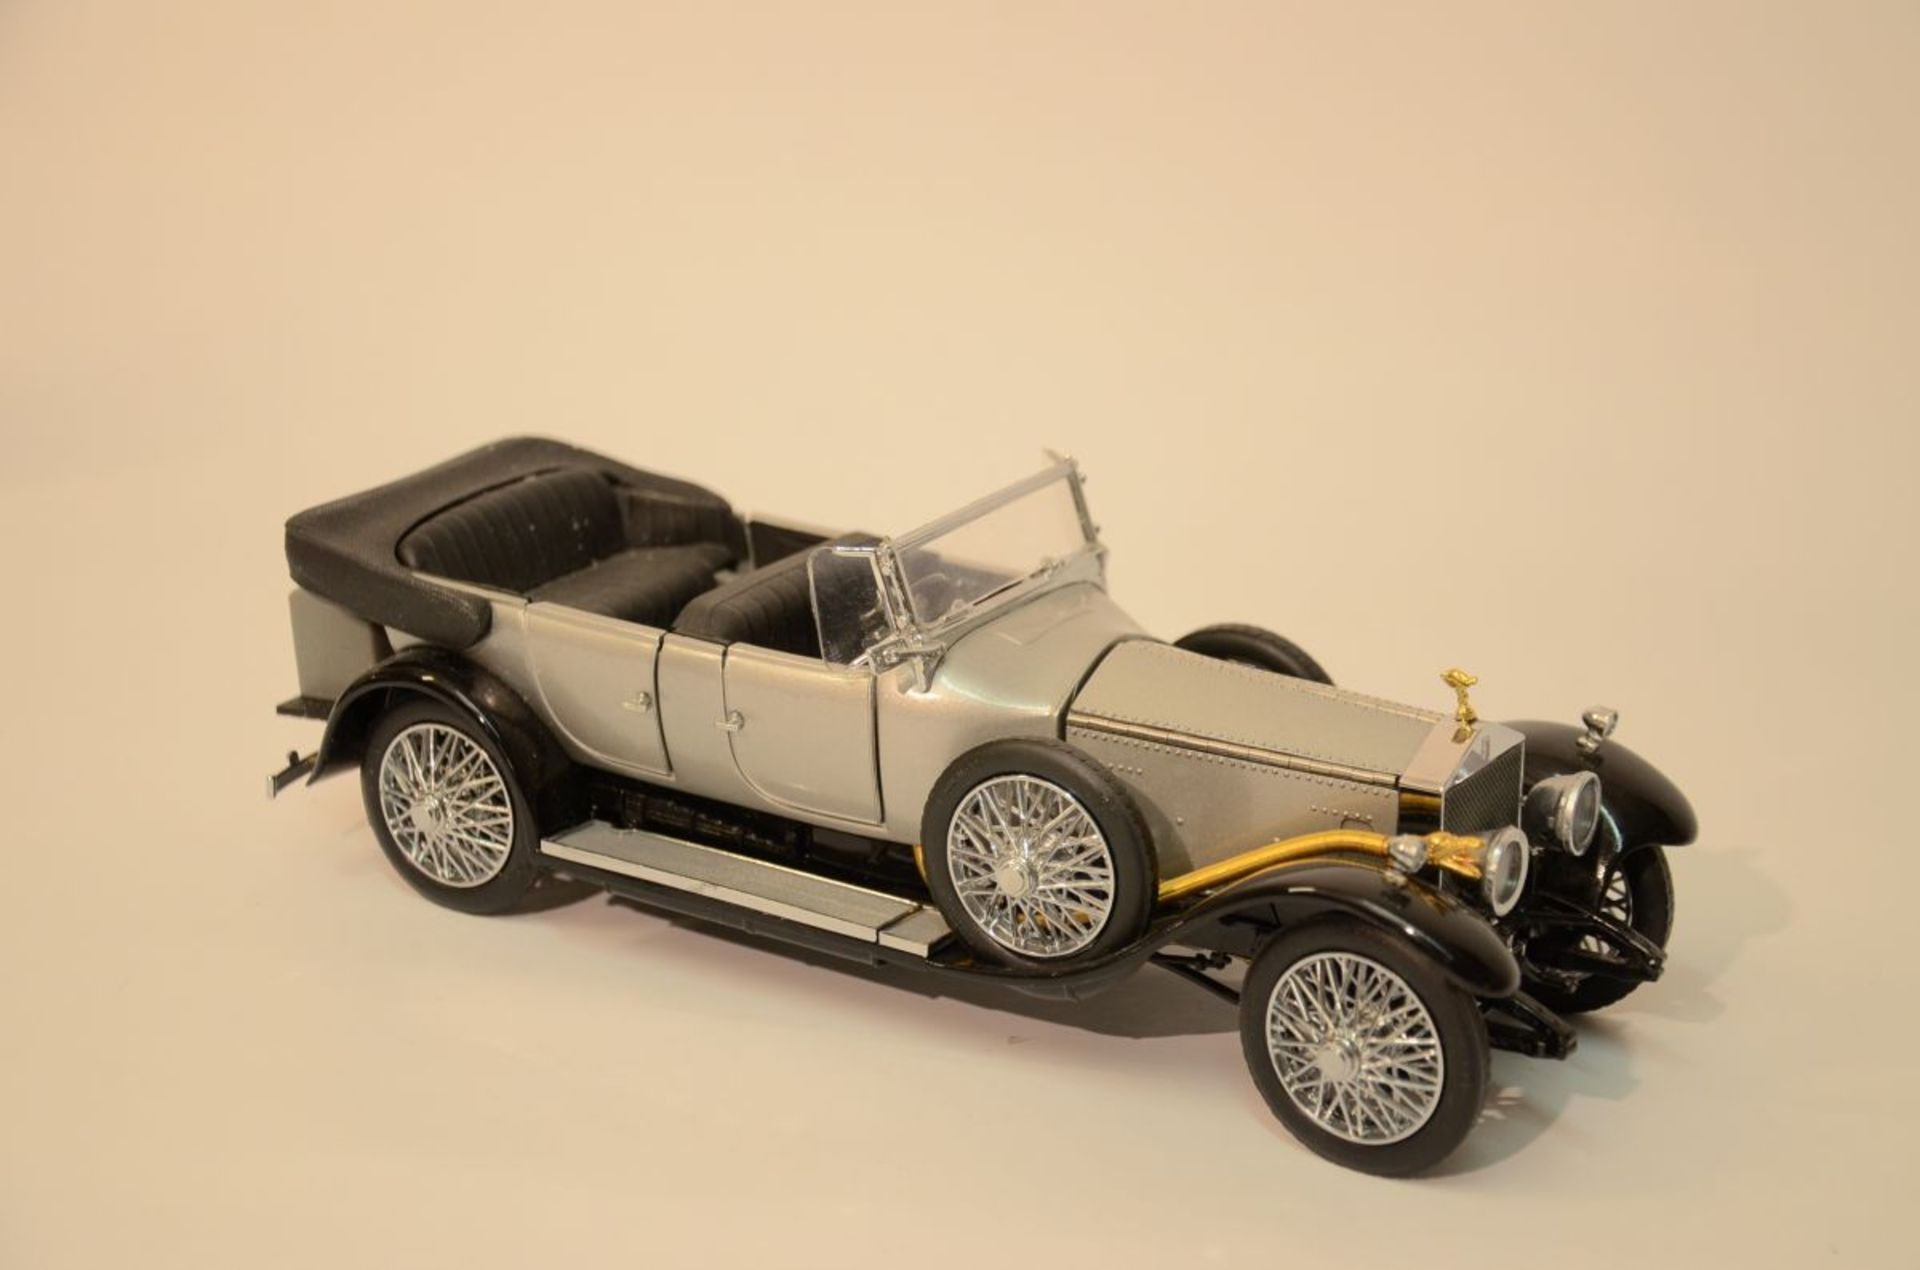 Franklin Mint "1925 Rolls-Royce Silver Ghost" 1/24 scale